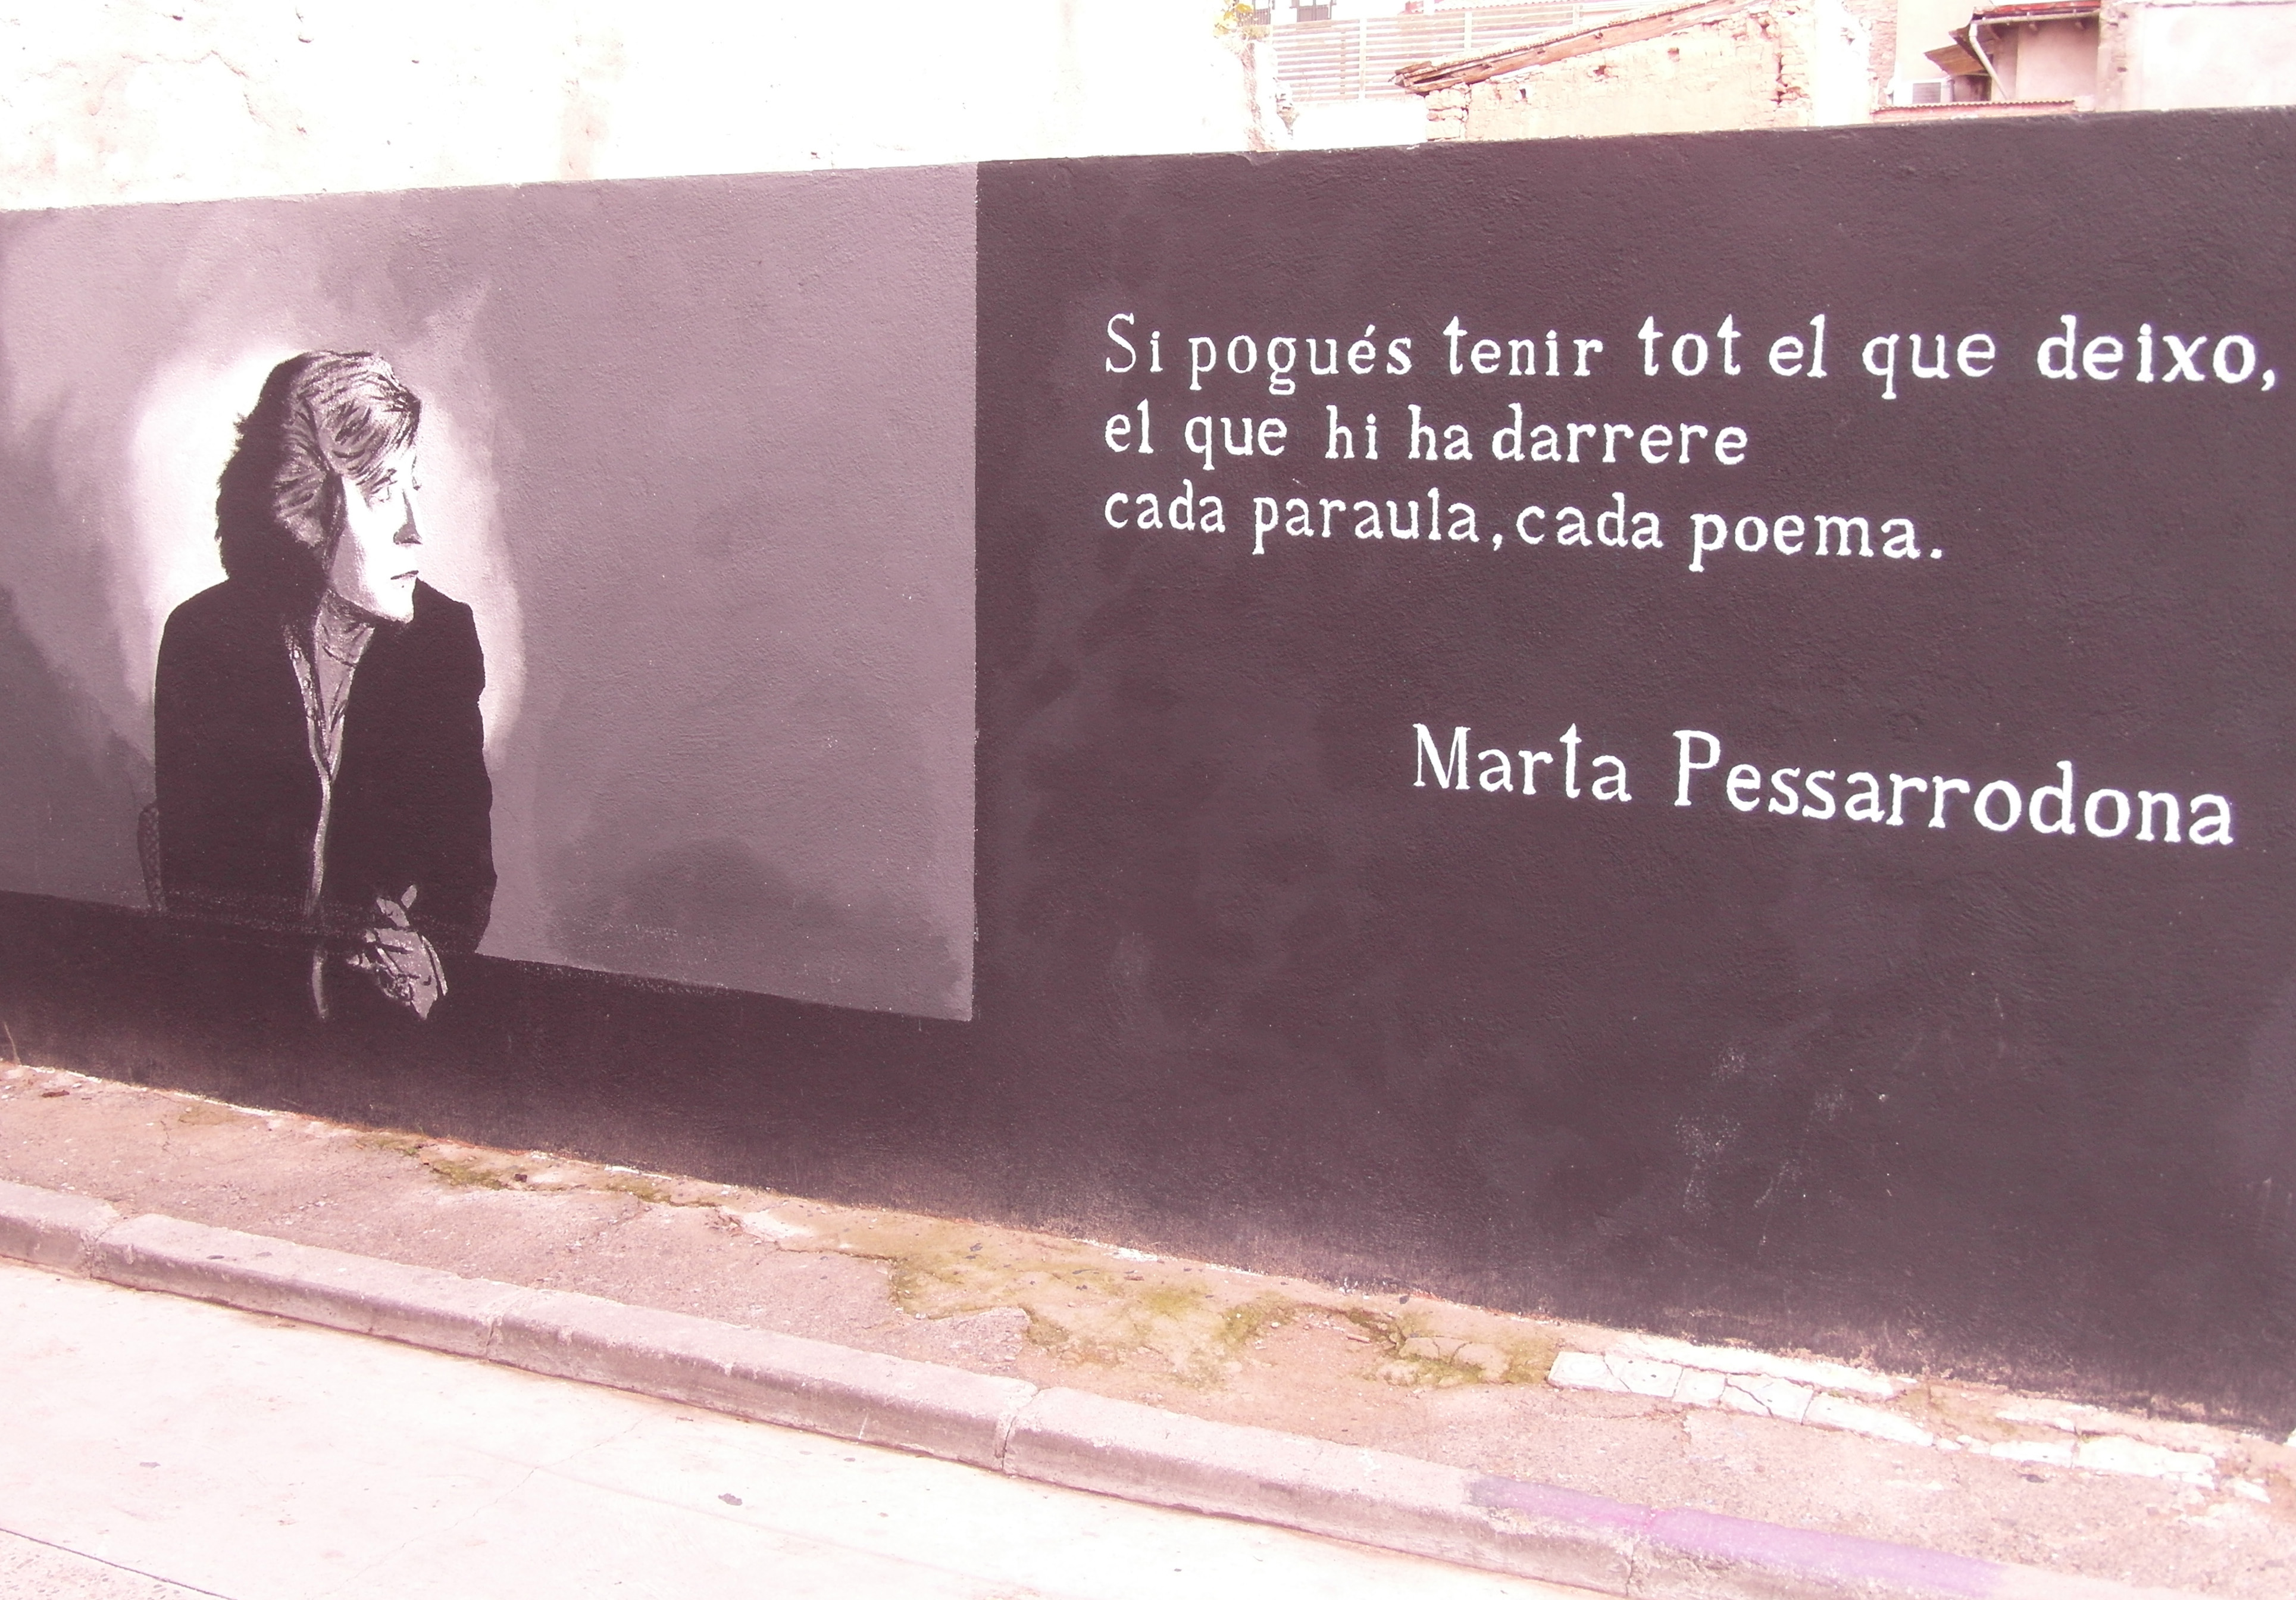 Marta Pessarrodona: "Els poetes catalans actuals no tenim cap mèrit perquè tenim una tradició riquíssima"